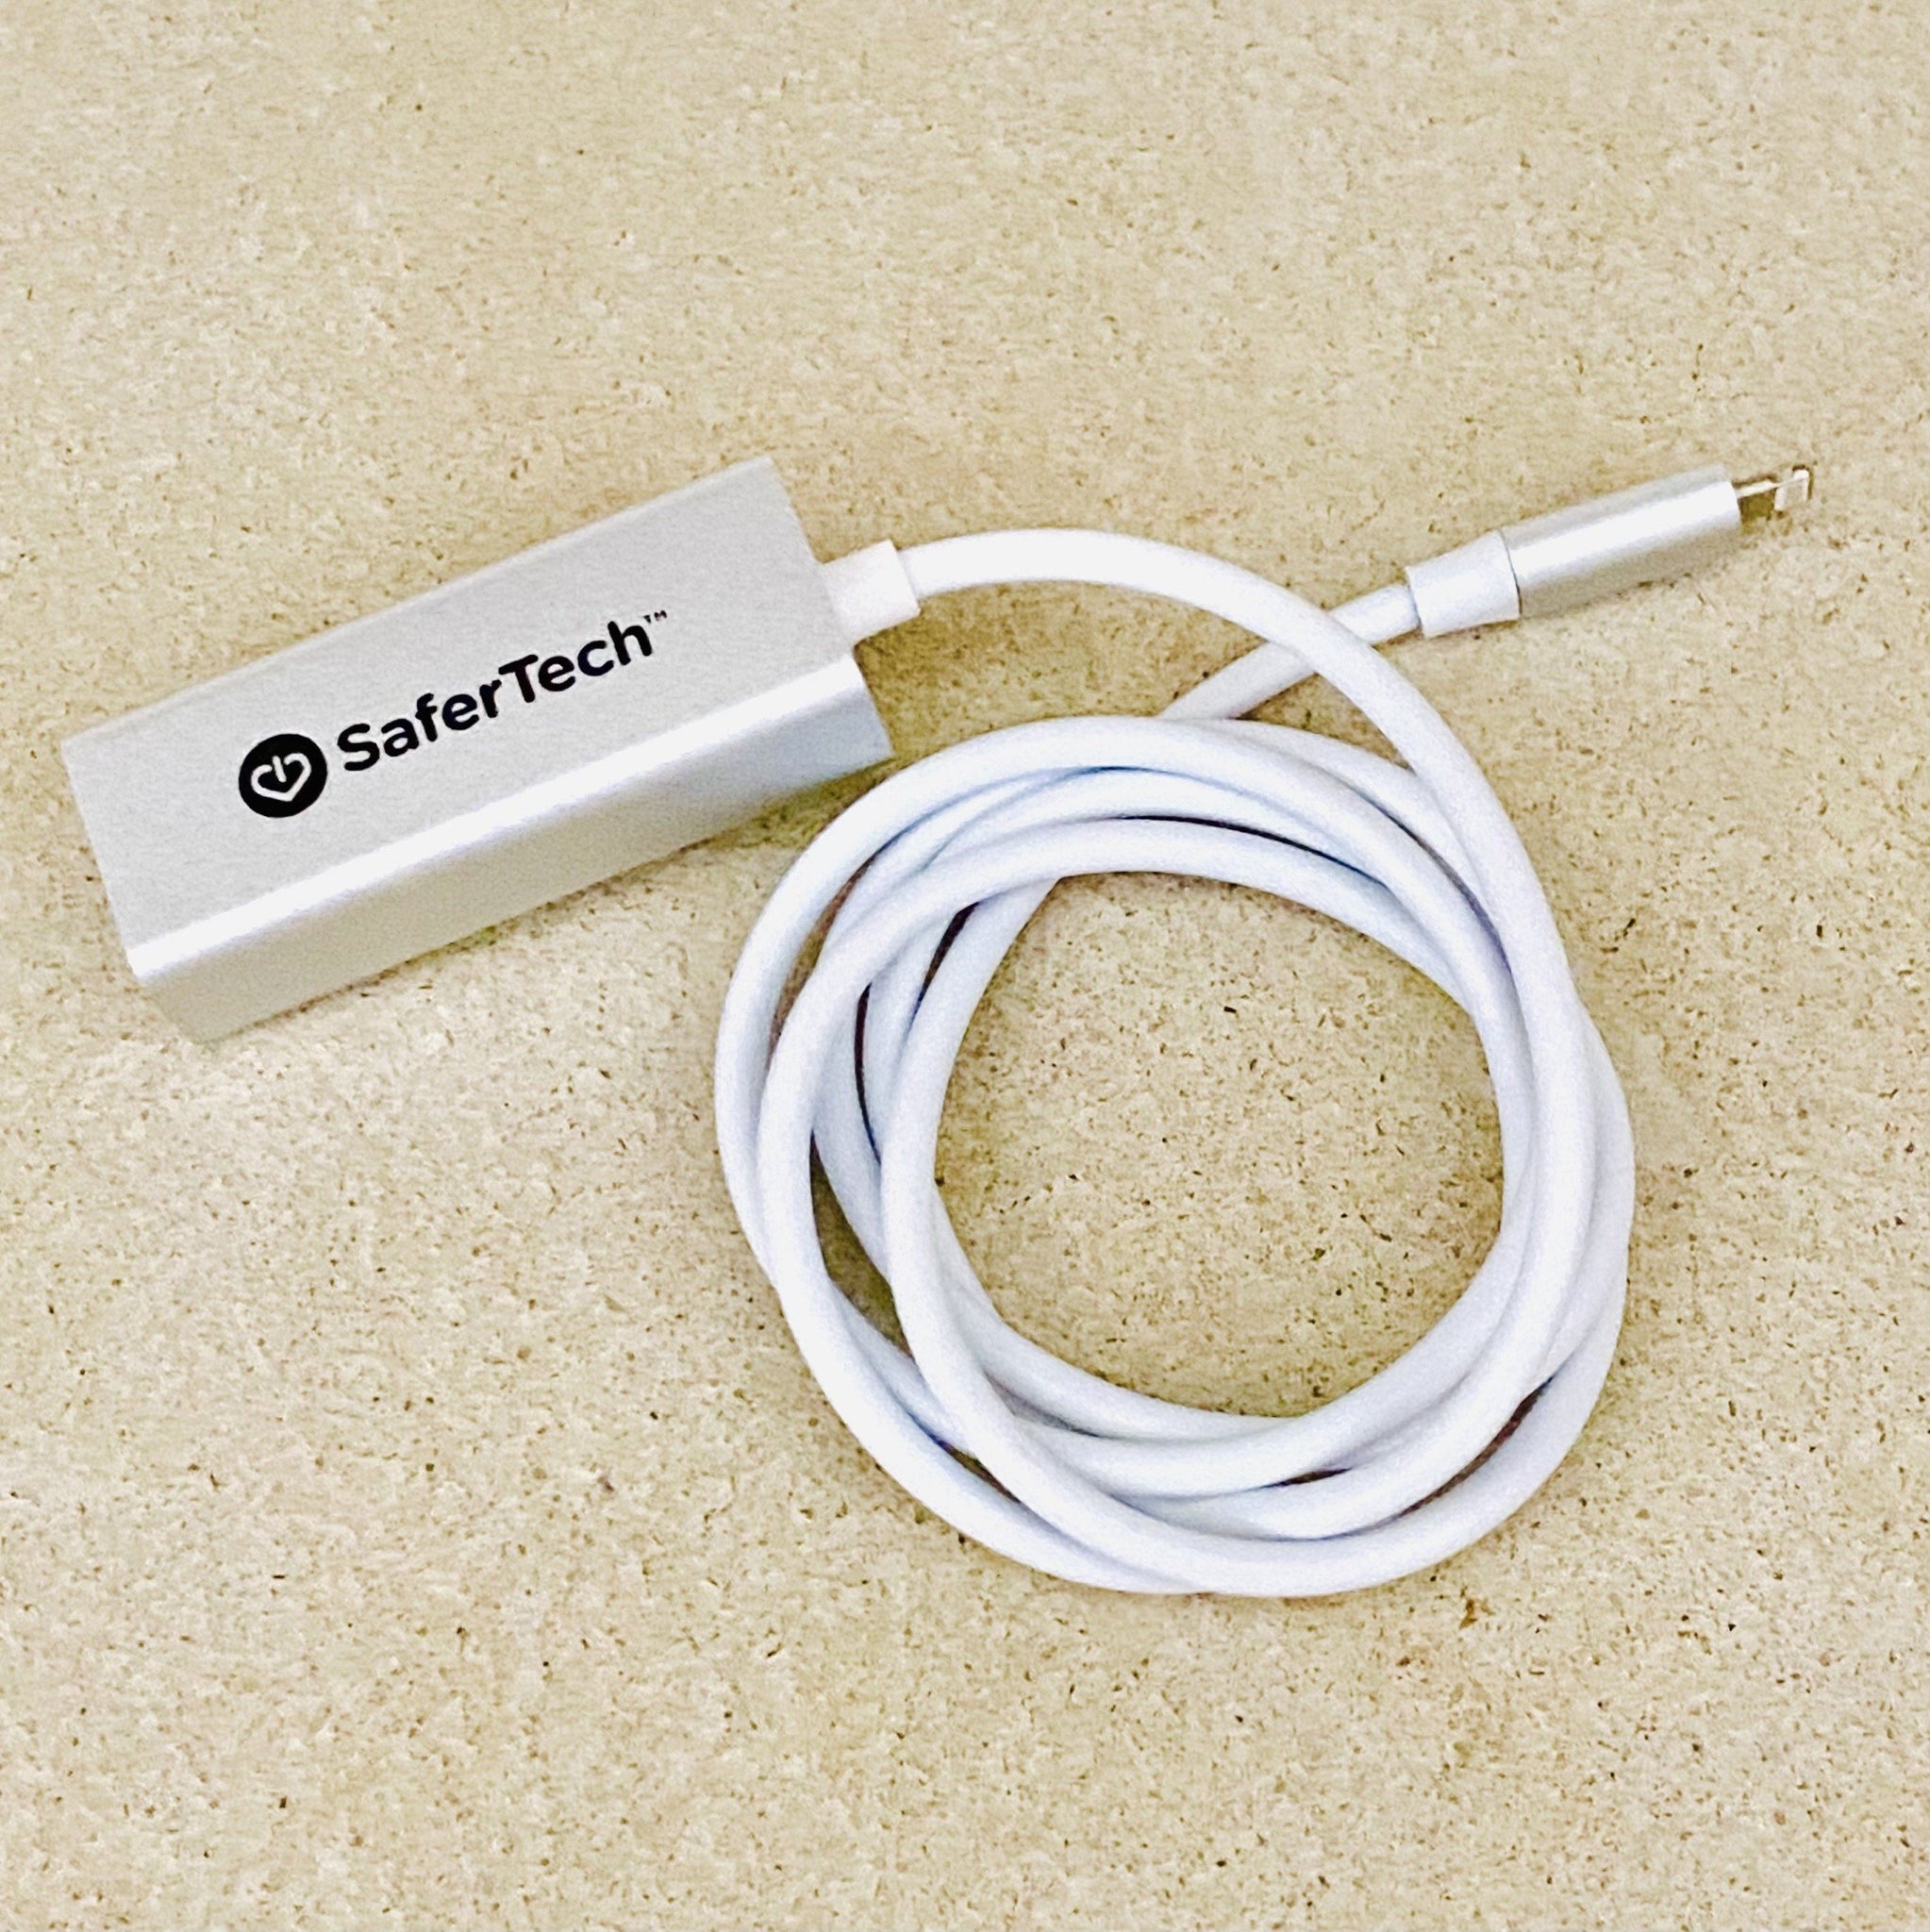 Adaptateur Lightning et Ethernet pour iPad, iPhone ou iPod